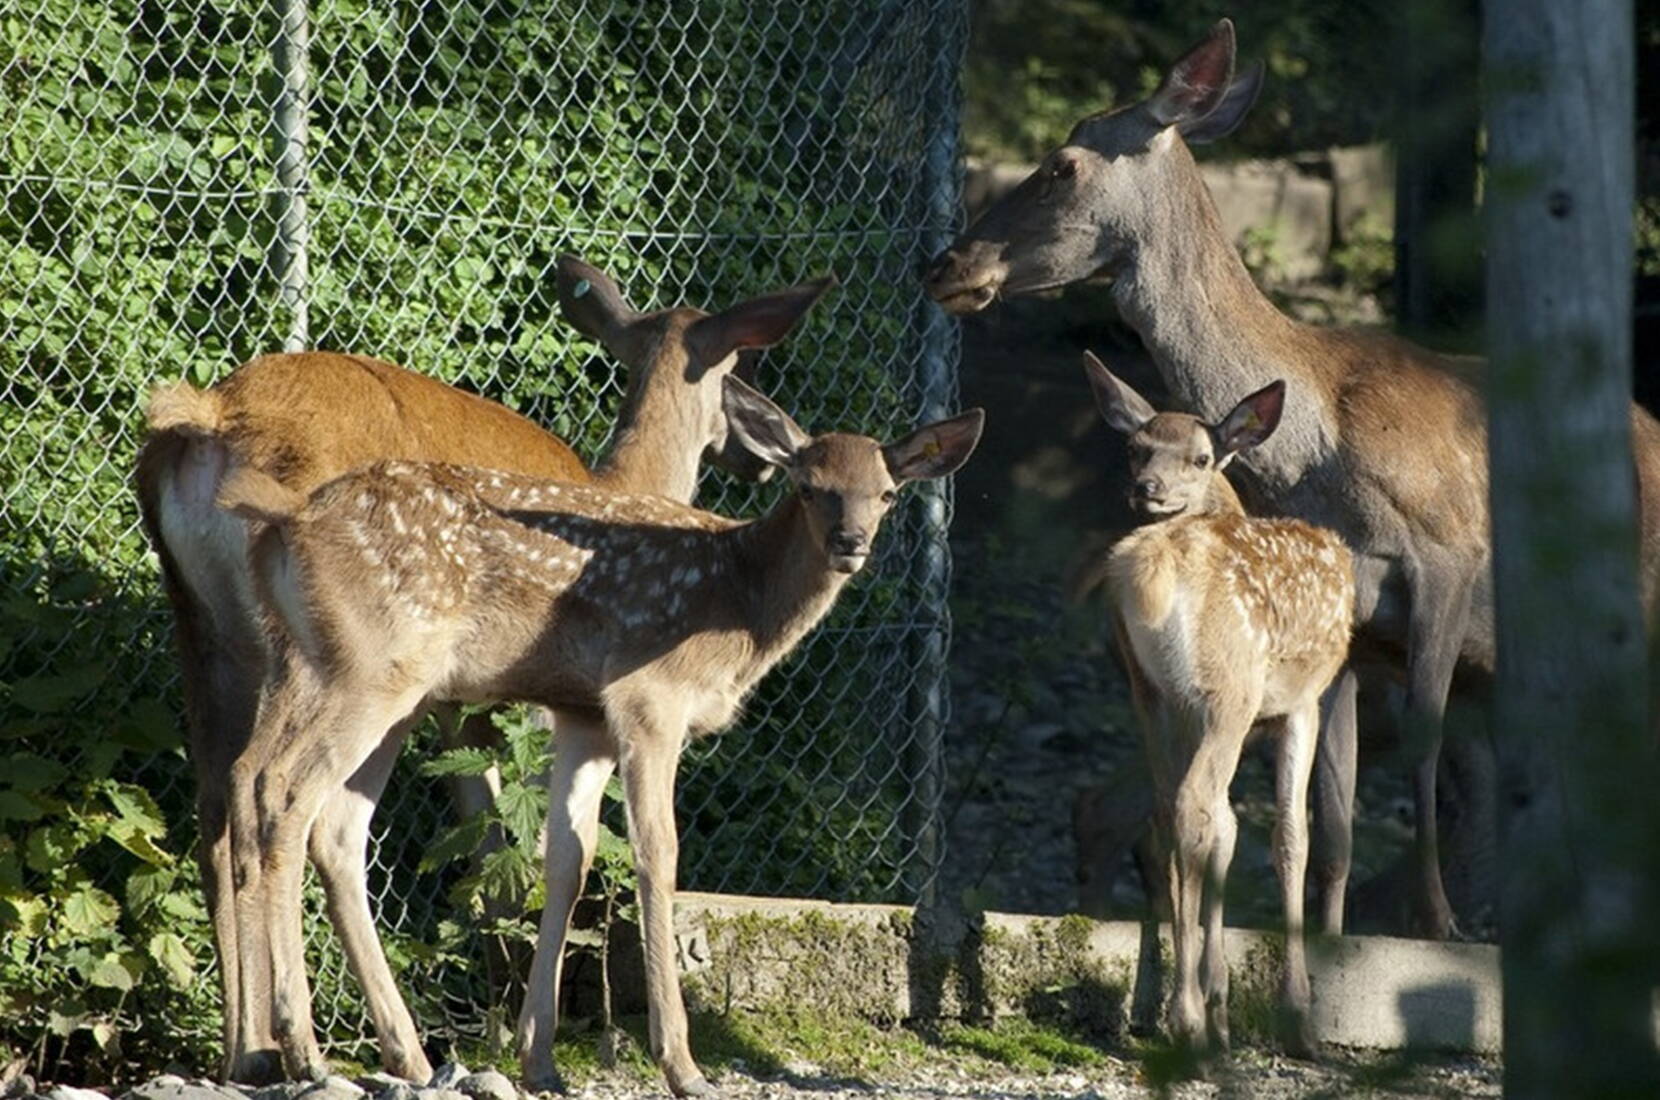 Escursione per famiglie al Parco dei cervi di Lucerna. Al Parco dei cervi di Lucerna è possibile confrontare e osservare faccia a faccia le diverse generazioni di cervi. Dal vitello, all'animale piccolo, al posteriore e al cervo superiore con le sue imponenti corna.